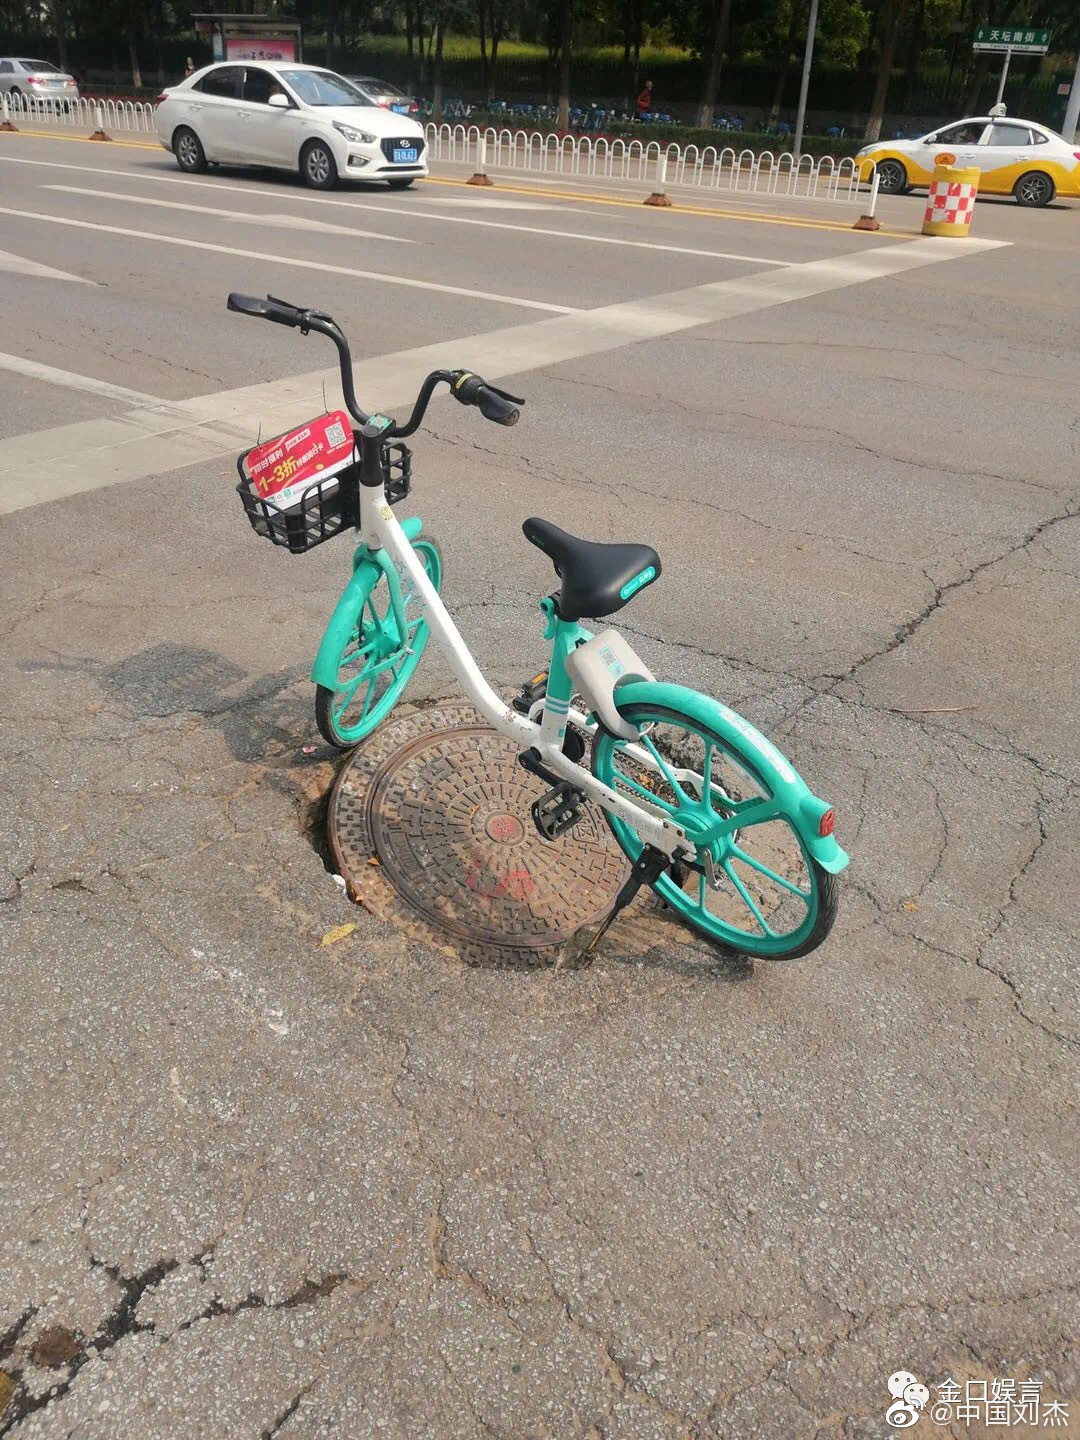 网传的图片显示，在一路口处，有一个已经松动的窨井盖，该井盖上方停有一辆共享单车。图片来源：微信公众号“金口娱言”